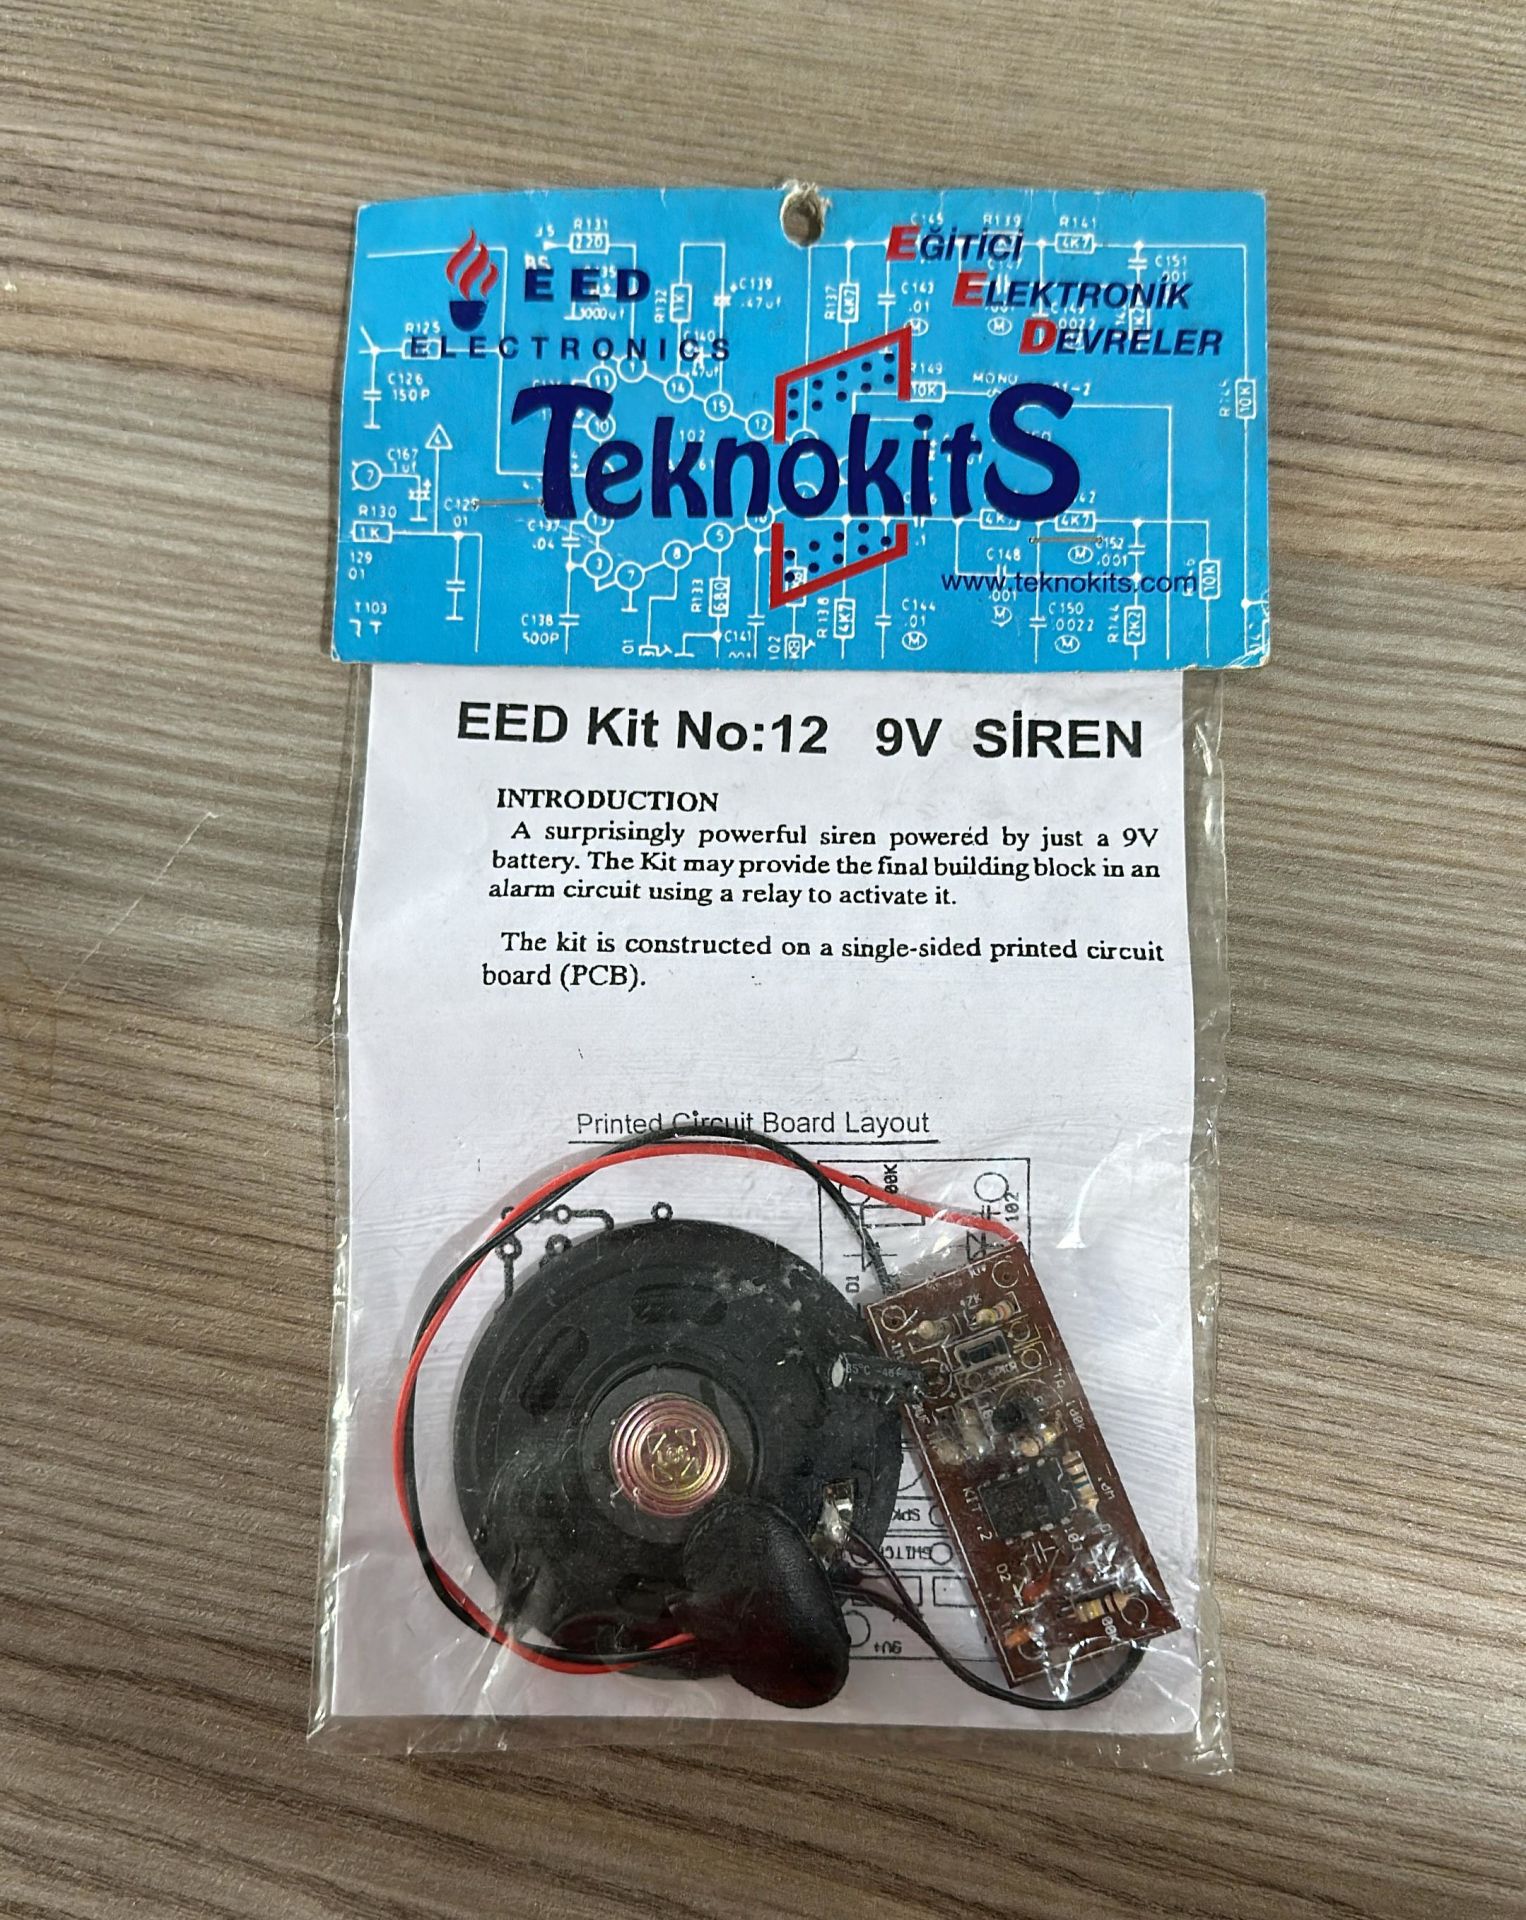 EED Kit No:12 9v Siren